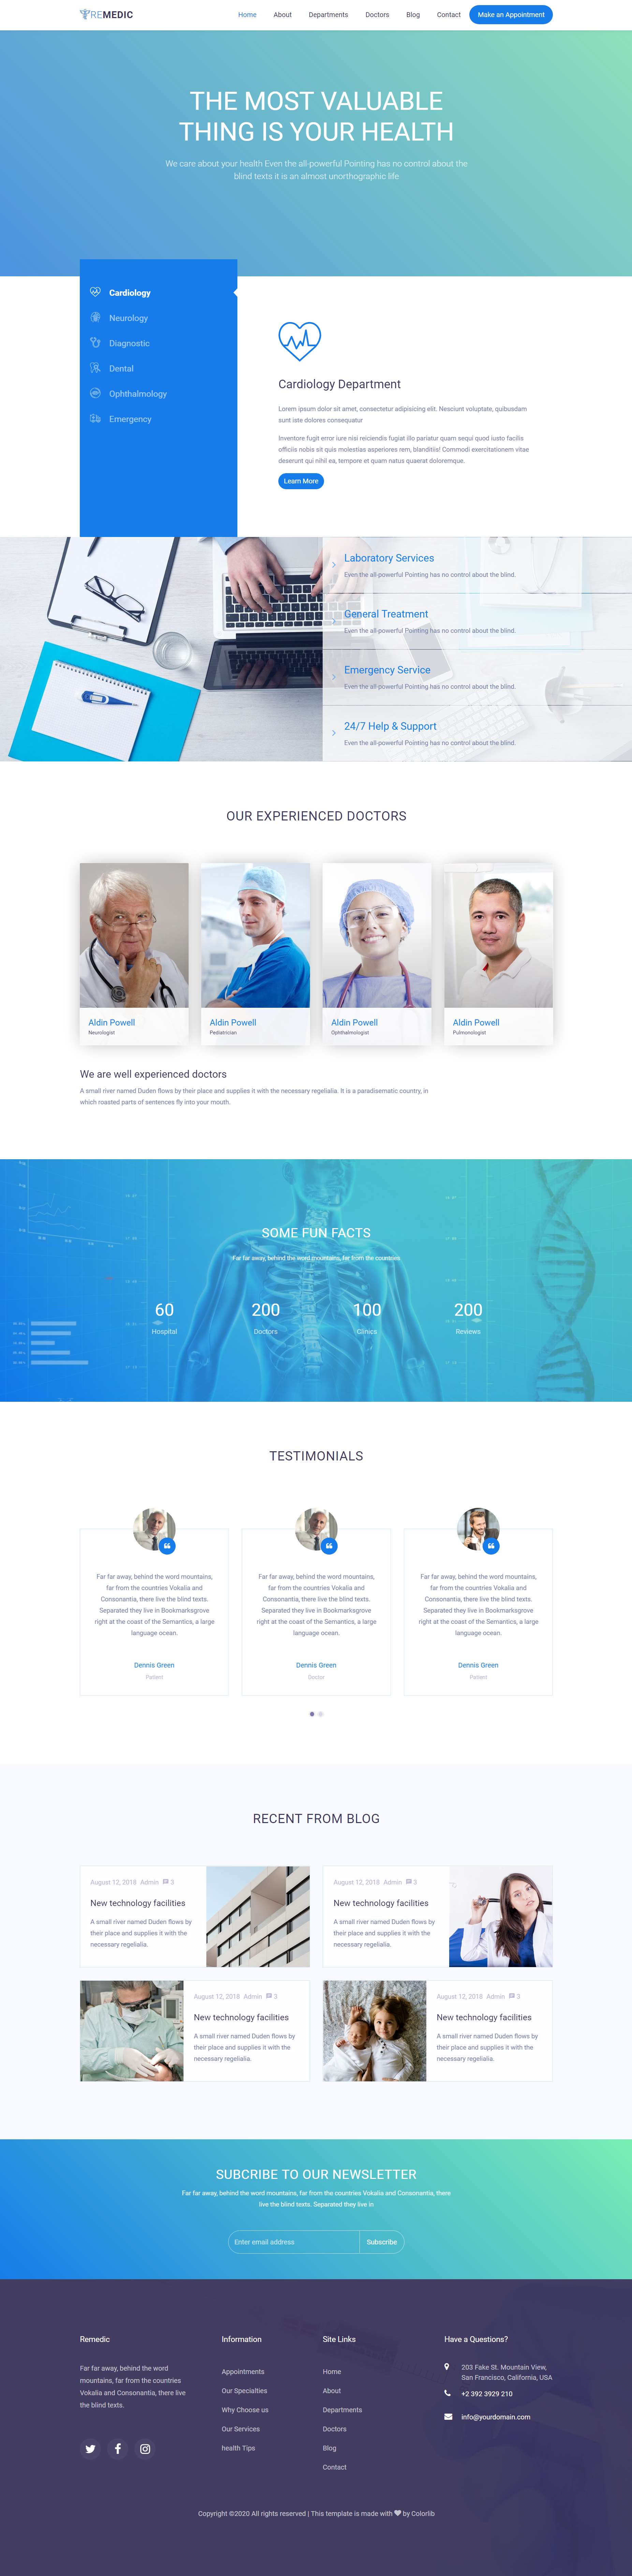 蓝色简洁风格响应式医学检查治疗网页模板